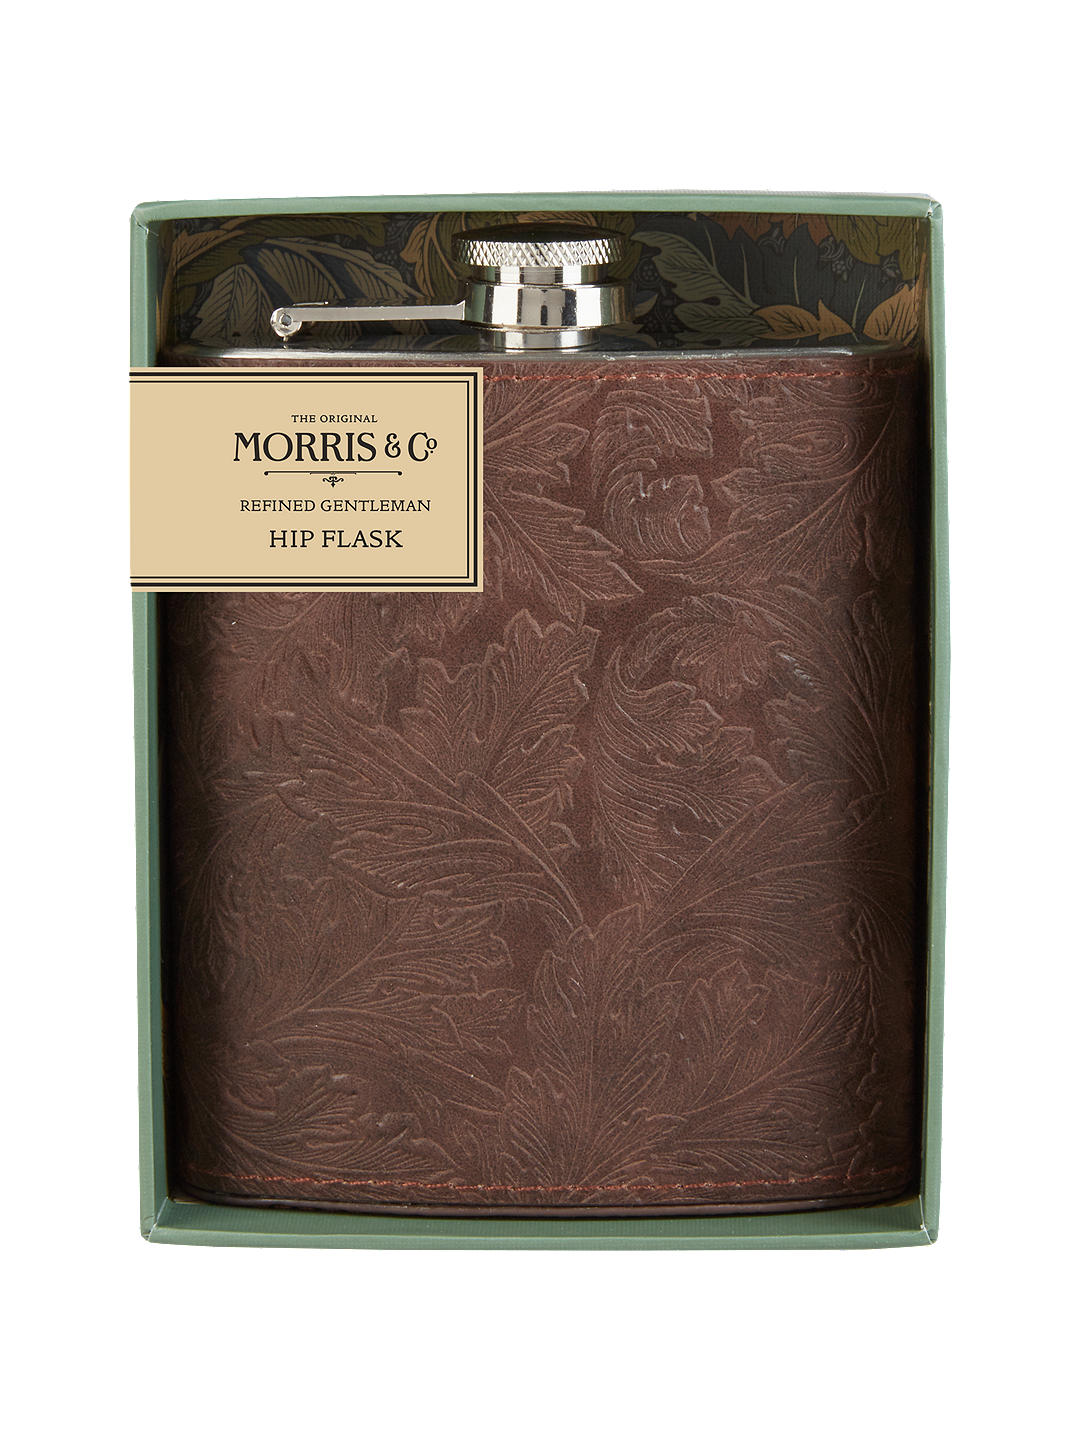 Morris & Co. Refined Gentleman Hip Flask